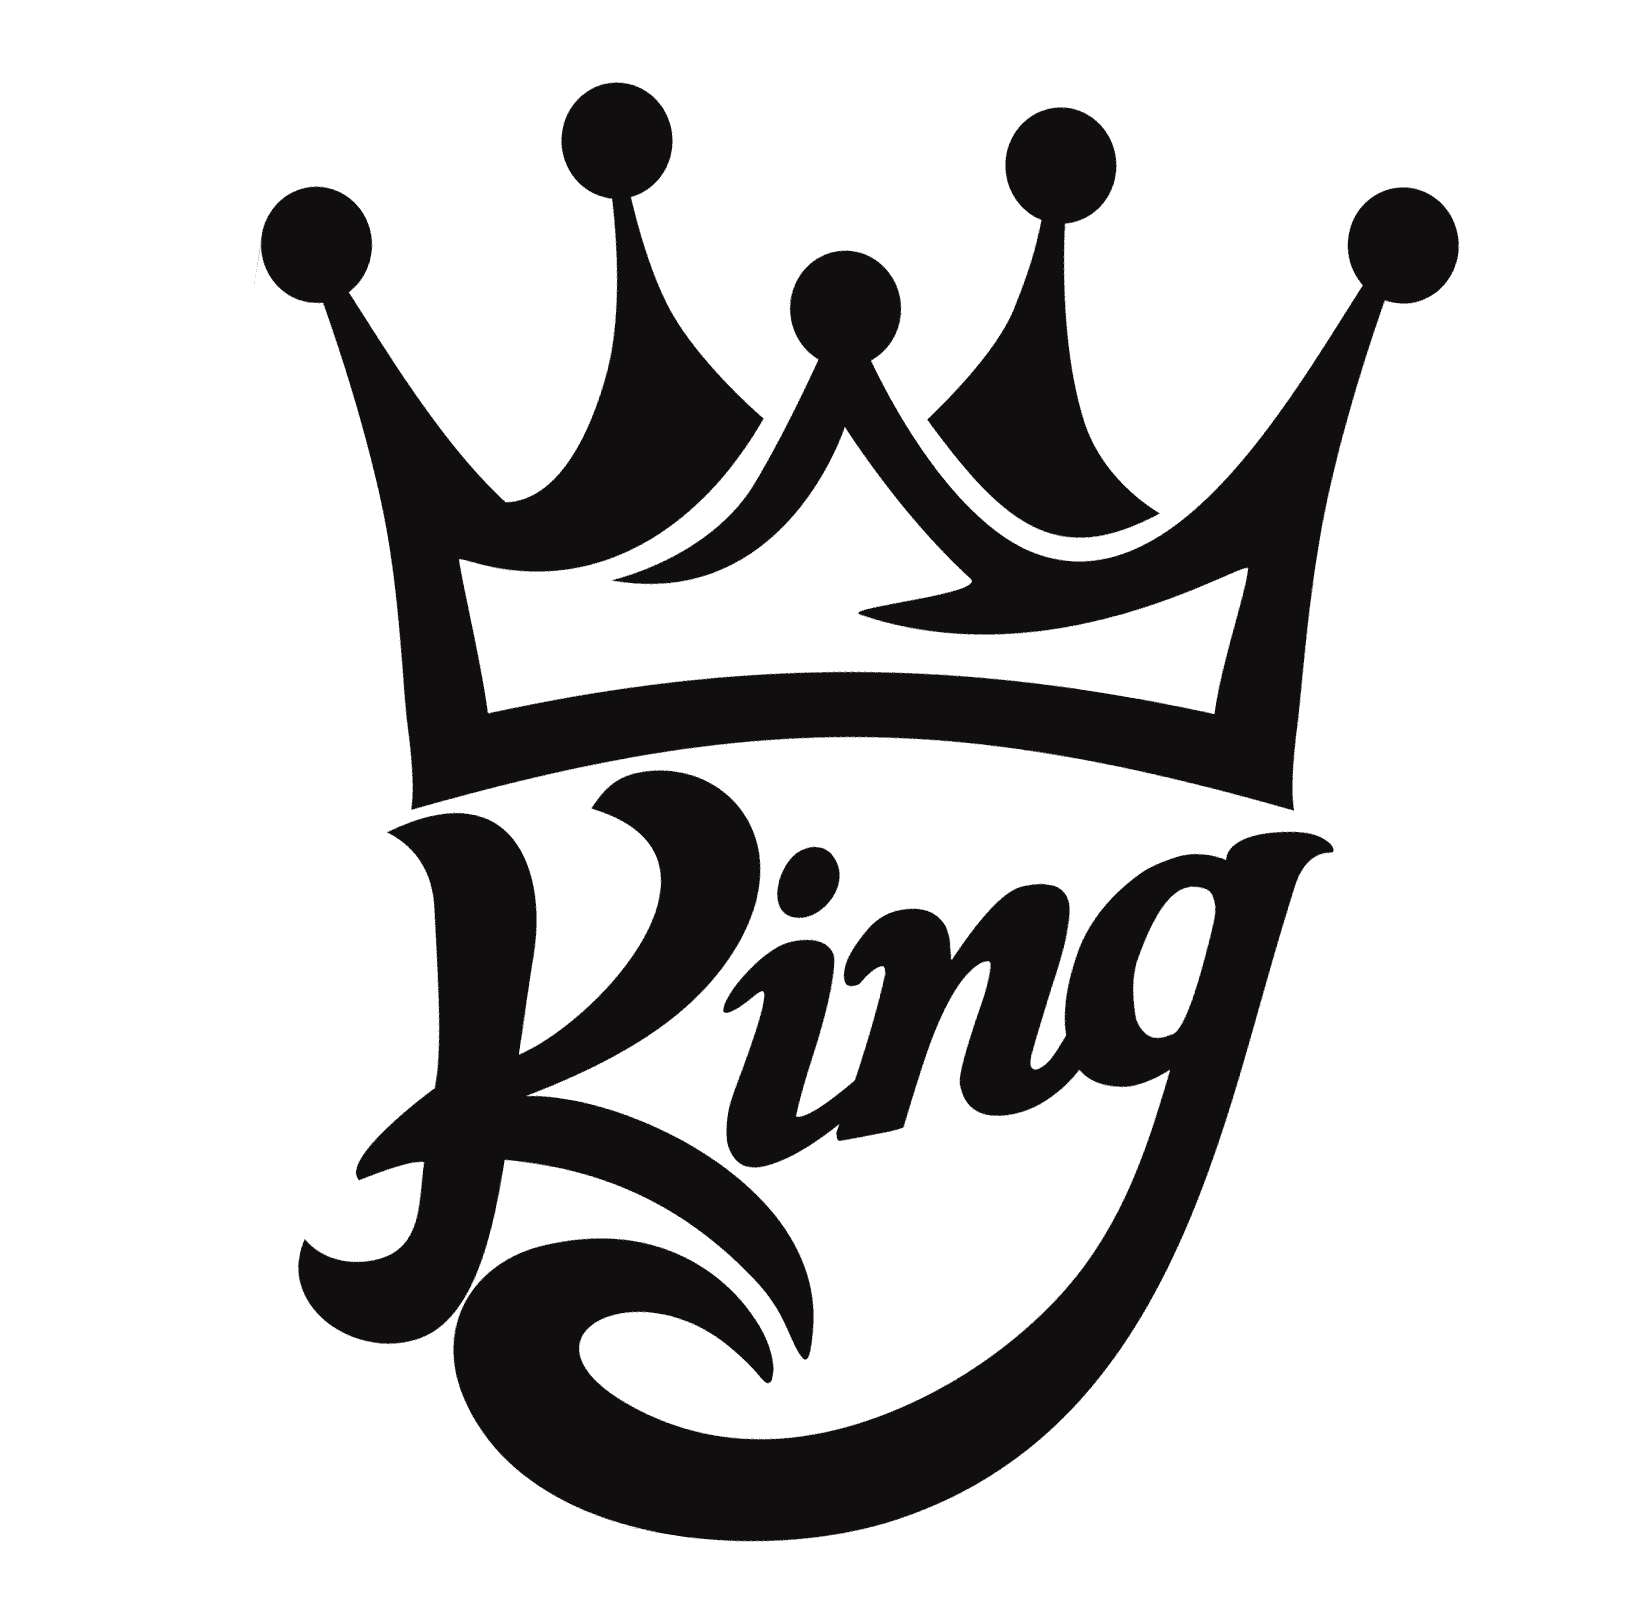 Y king logo